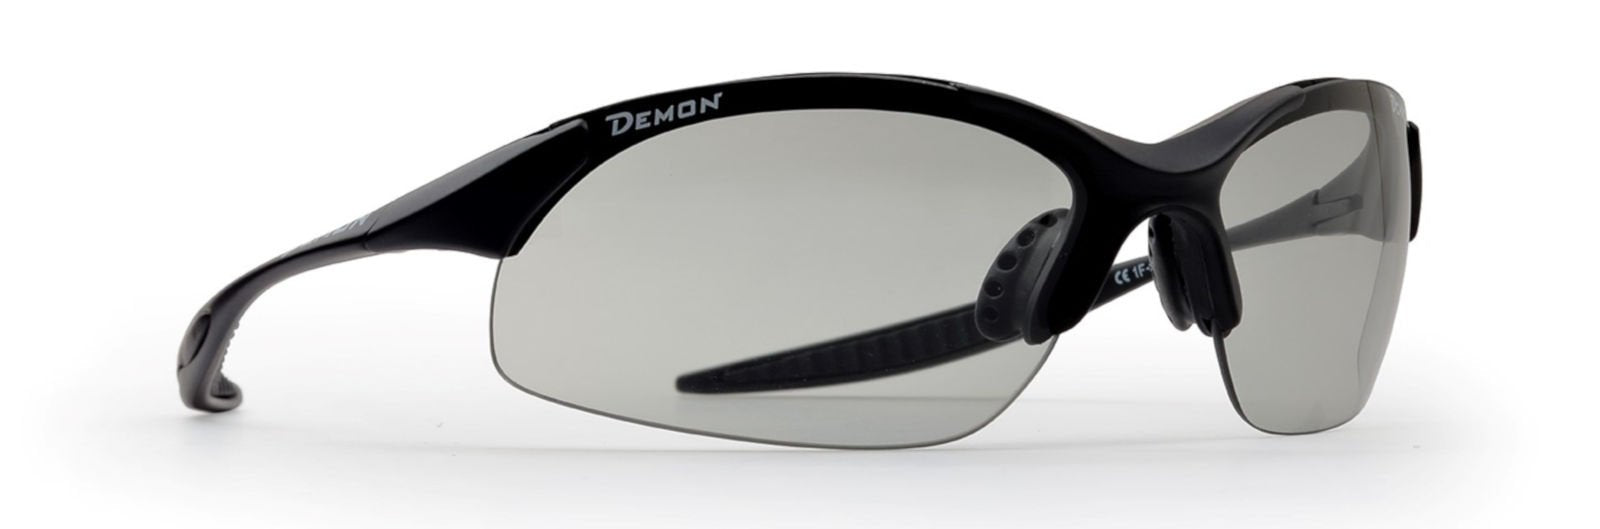 glasses for trail running photochromic lenses dchrom model 832 matt black colour